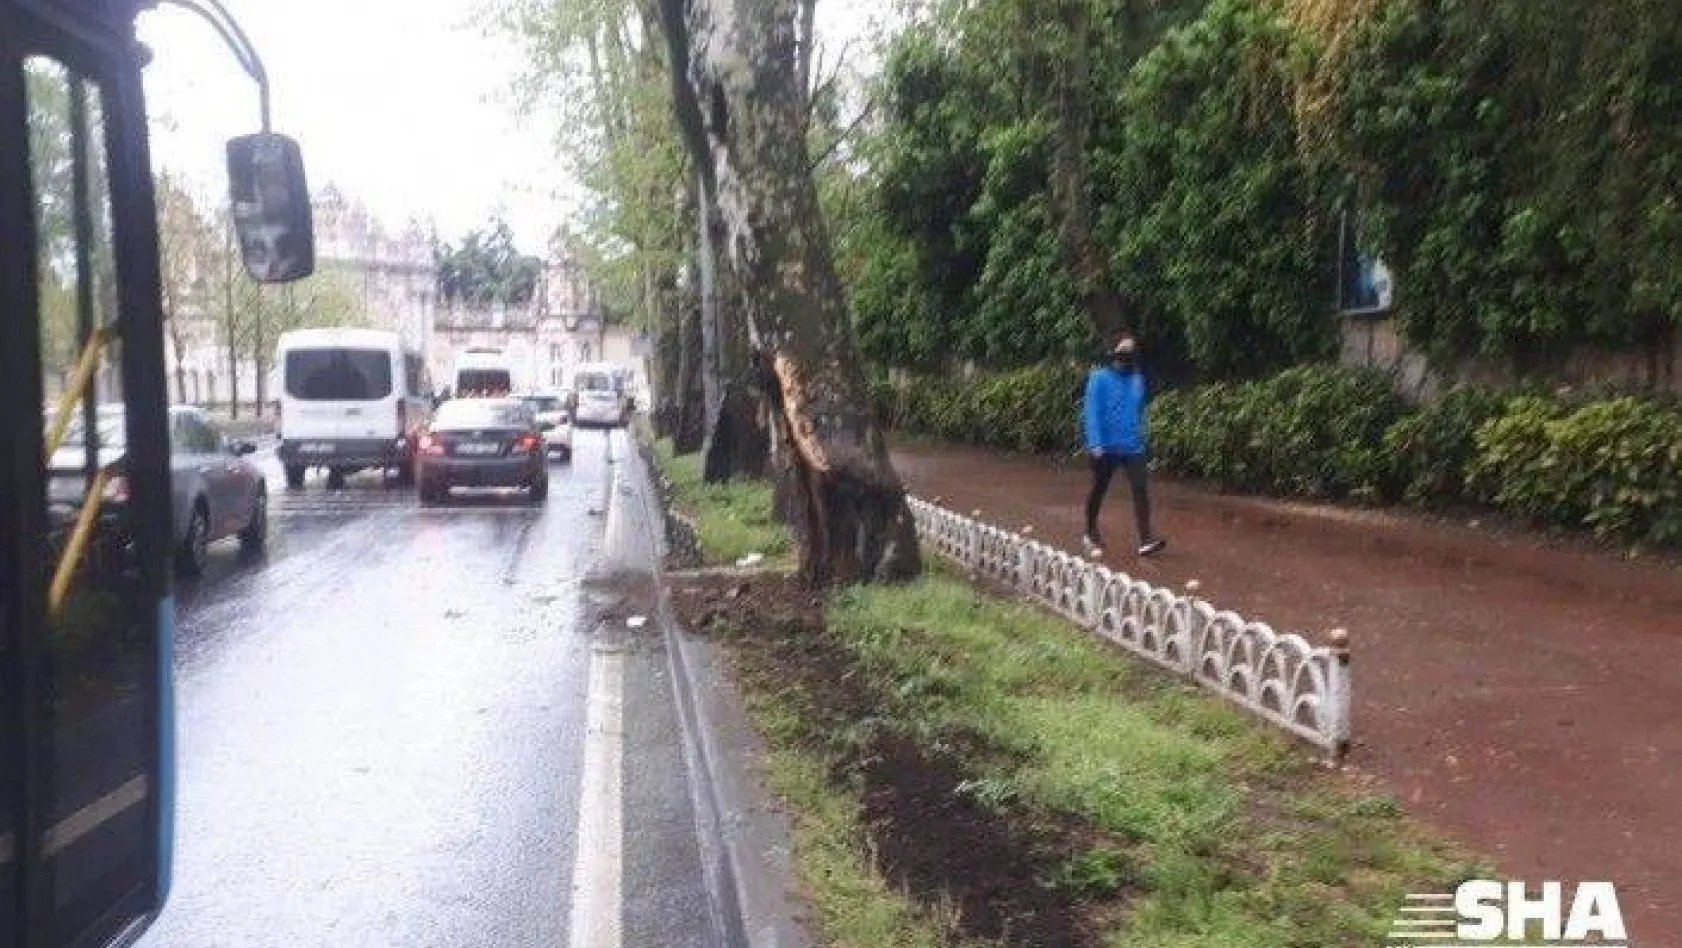 (Özel) Beşiktaş'ta kontrolden çıkan araç 80 metre sürüklenip ağaca çarptı: 4 yaralı